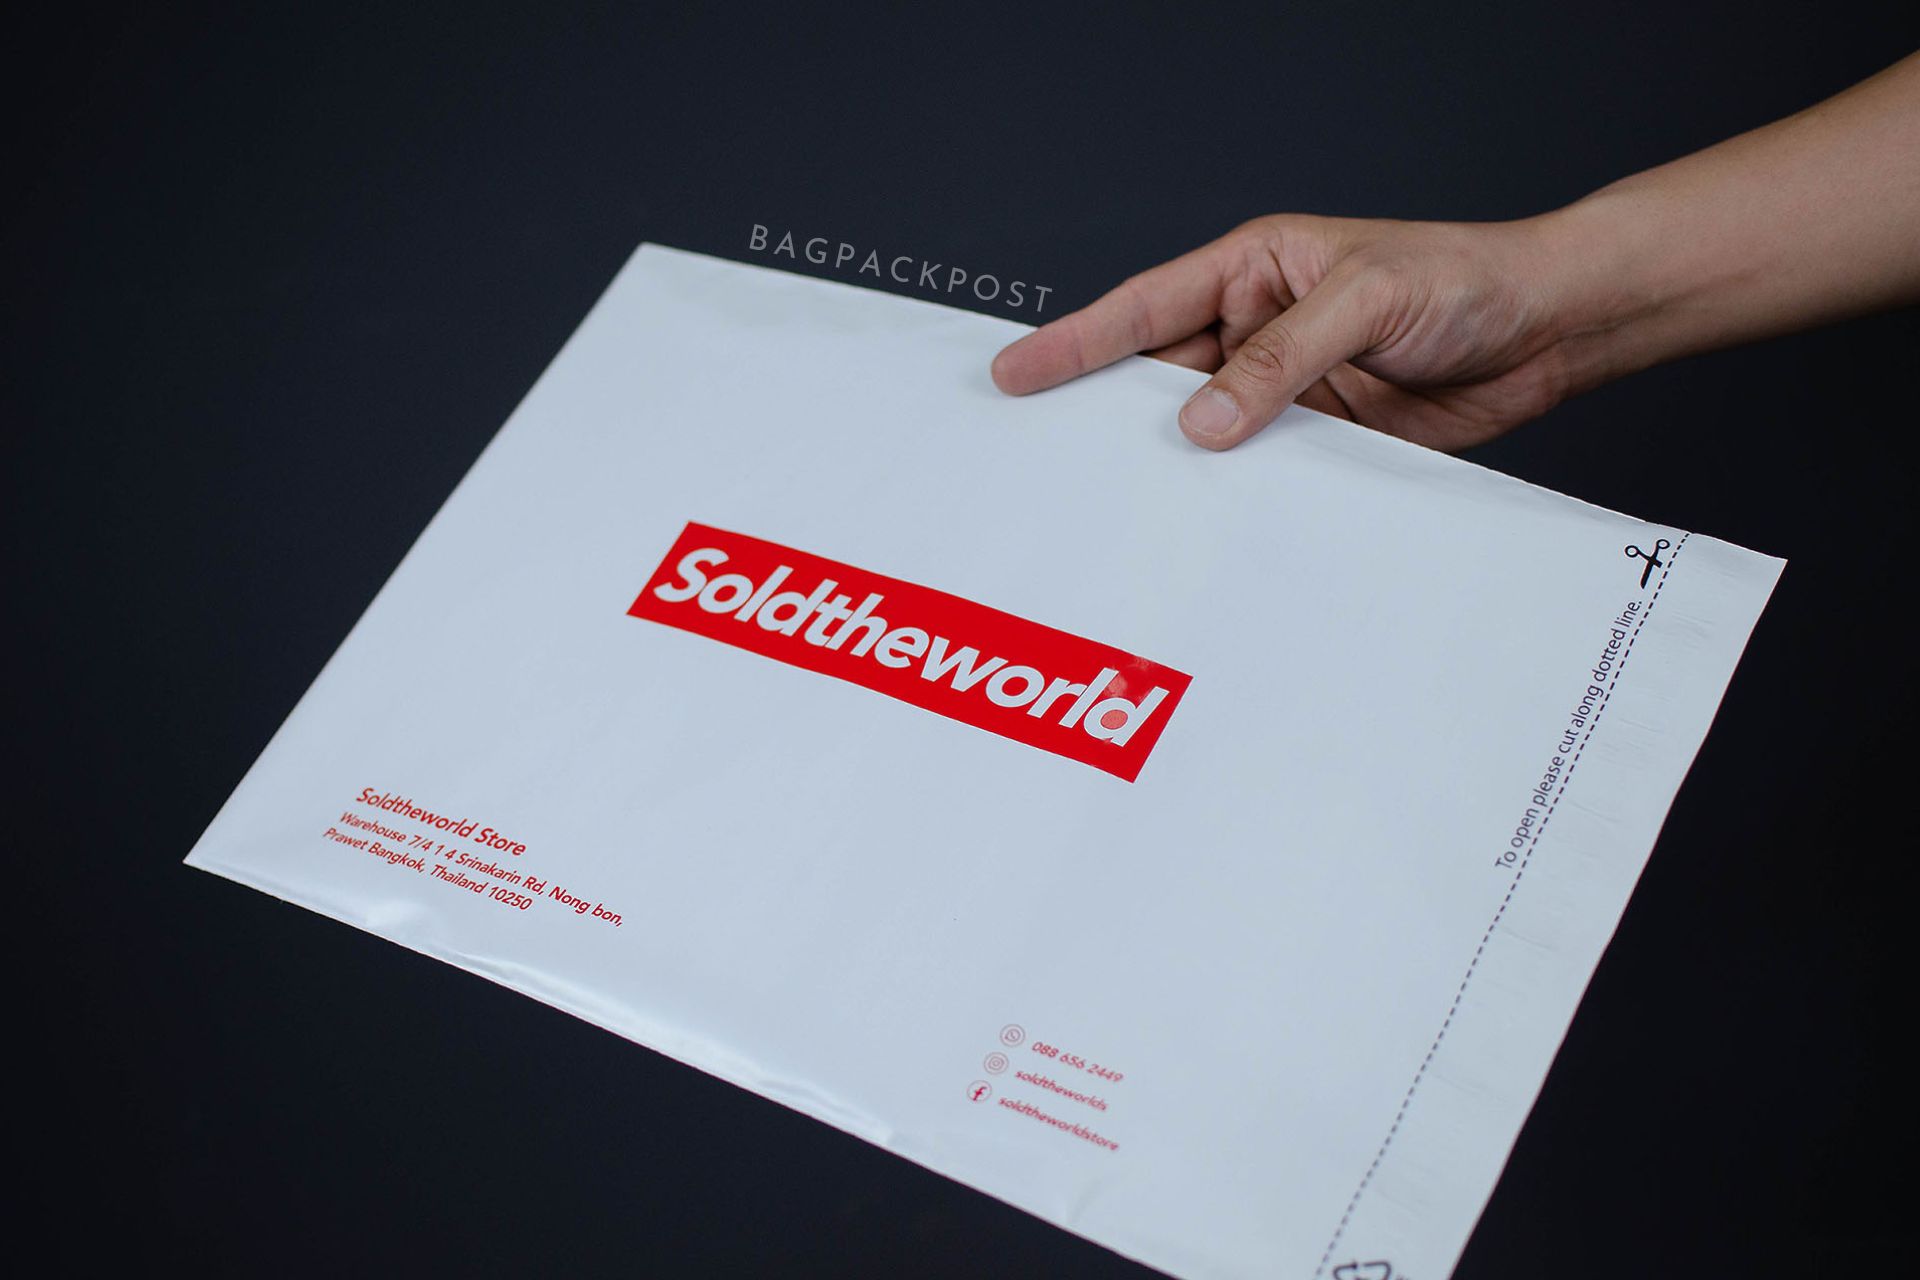 ผลิตถุงไปรษณีย์ ซองไปรษณีย์พิมพ์ลาย SoldTheWorldStore ซองไปรษณีย์สีขาว ถุงไปรษณีย์พิมพ์ลาย 3 BagPackPost